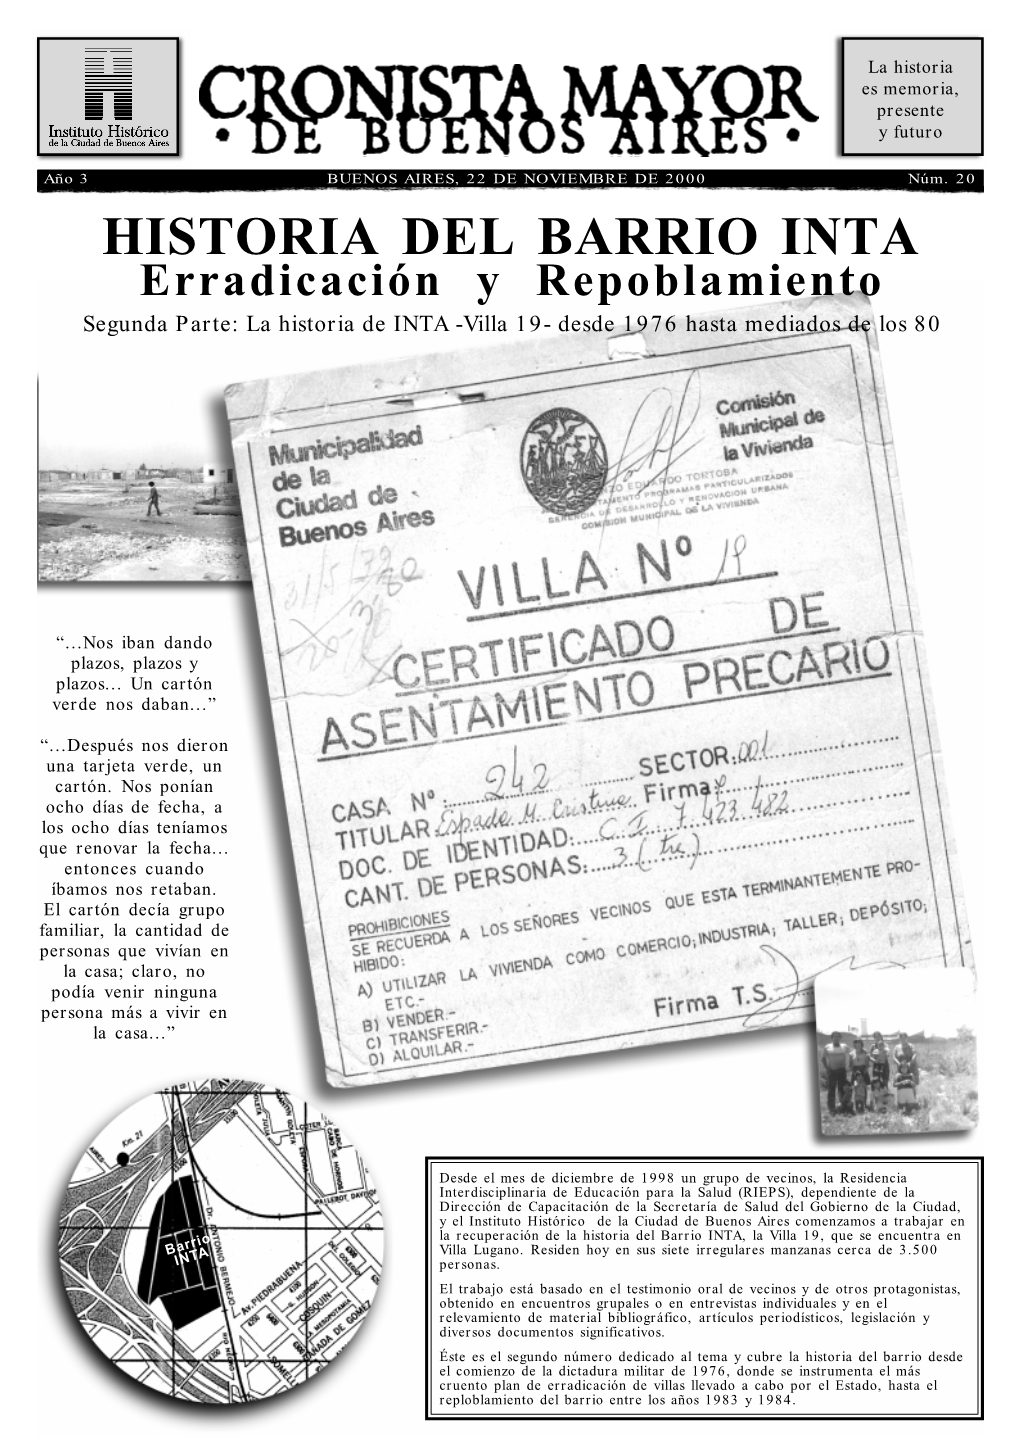 HISTORIA DEL BARRIO INTA Erradicación Y Repoblamiento Segunda Parte: La Historia De INTA -Villa 19- Desde 1976 Hasta Mediados De Los 80